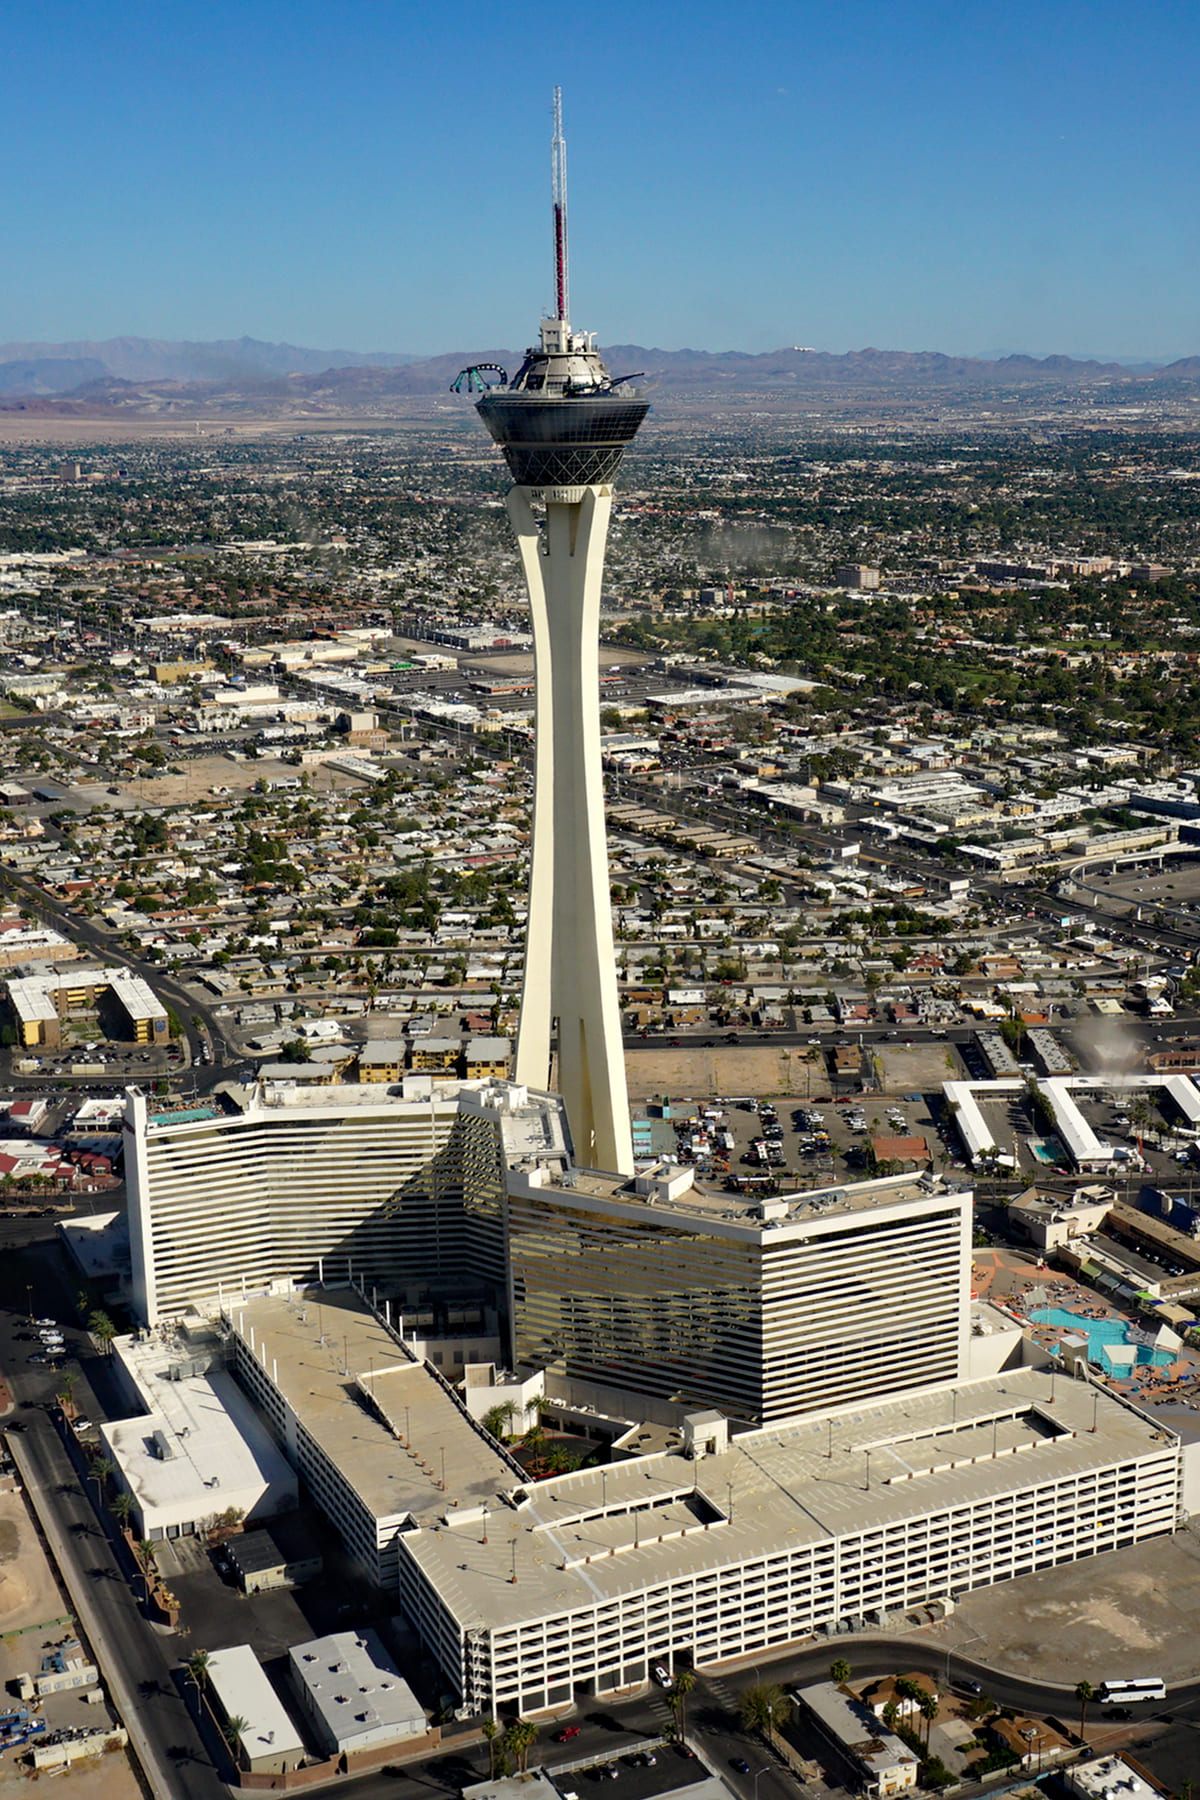 Stratosphere Tower - 350 metros - Estados Unidos - Localizada em Las Vegas, é uma das atrações mais emblemáticas da cidade conhecida por seus hotéis e cassinos. A construção foi concluída em 1996. A torre conta com diversas atrações, além da Big Shot, que catapulta os visitantes para cima a uma velocidade de 70 km/h.